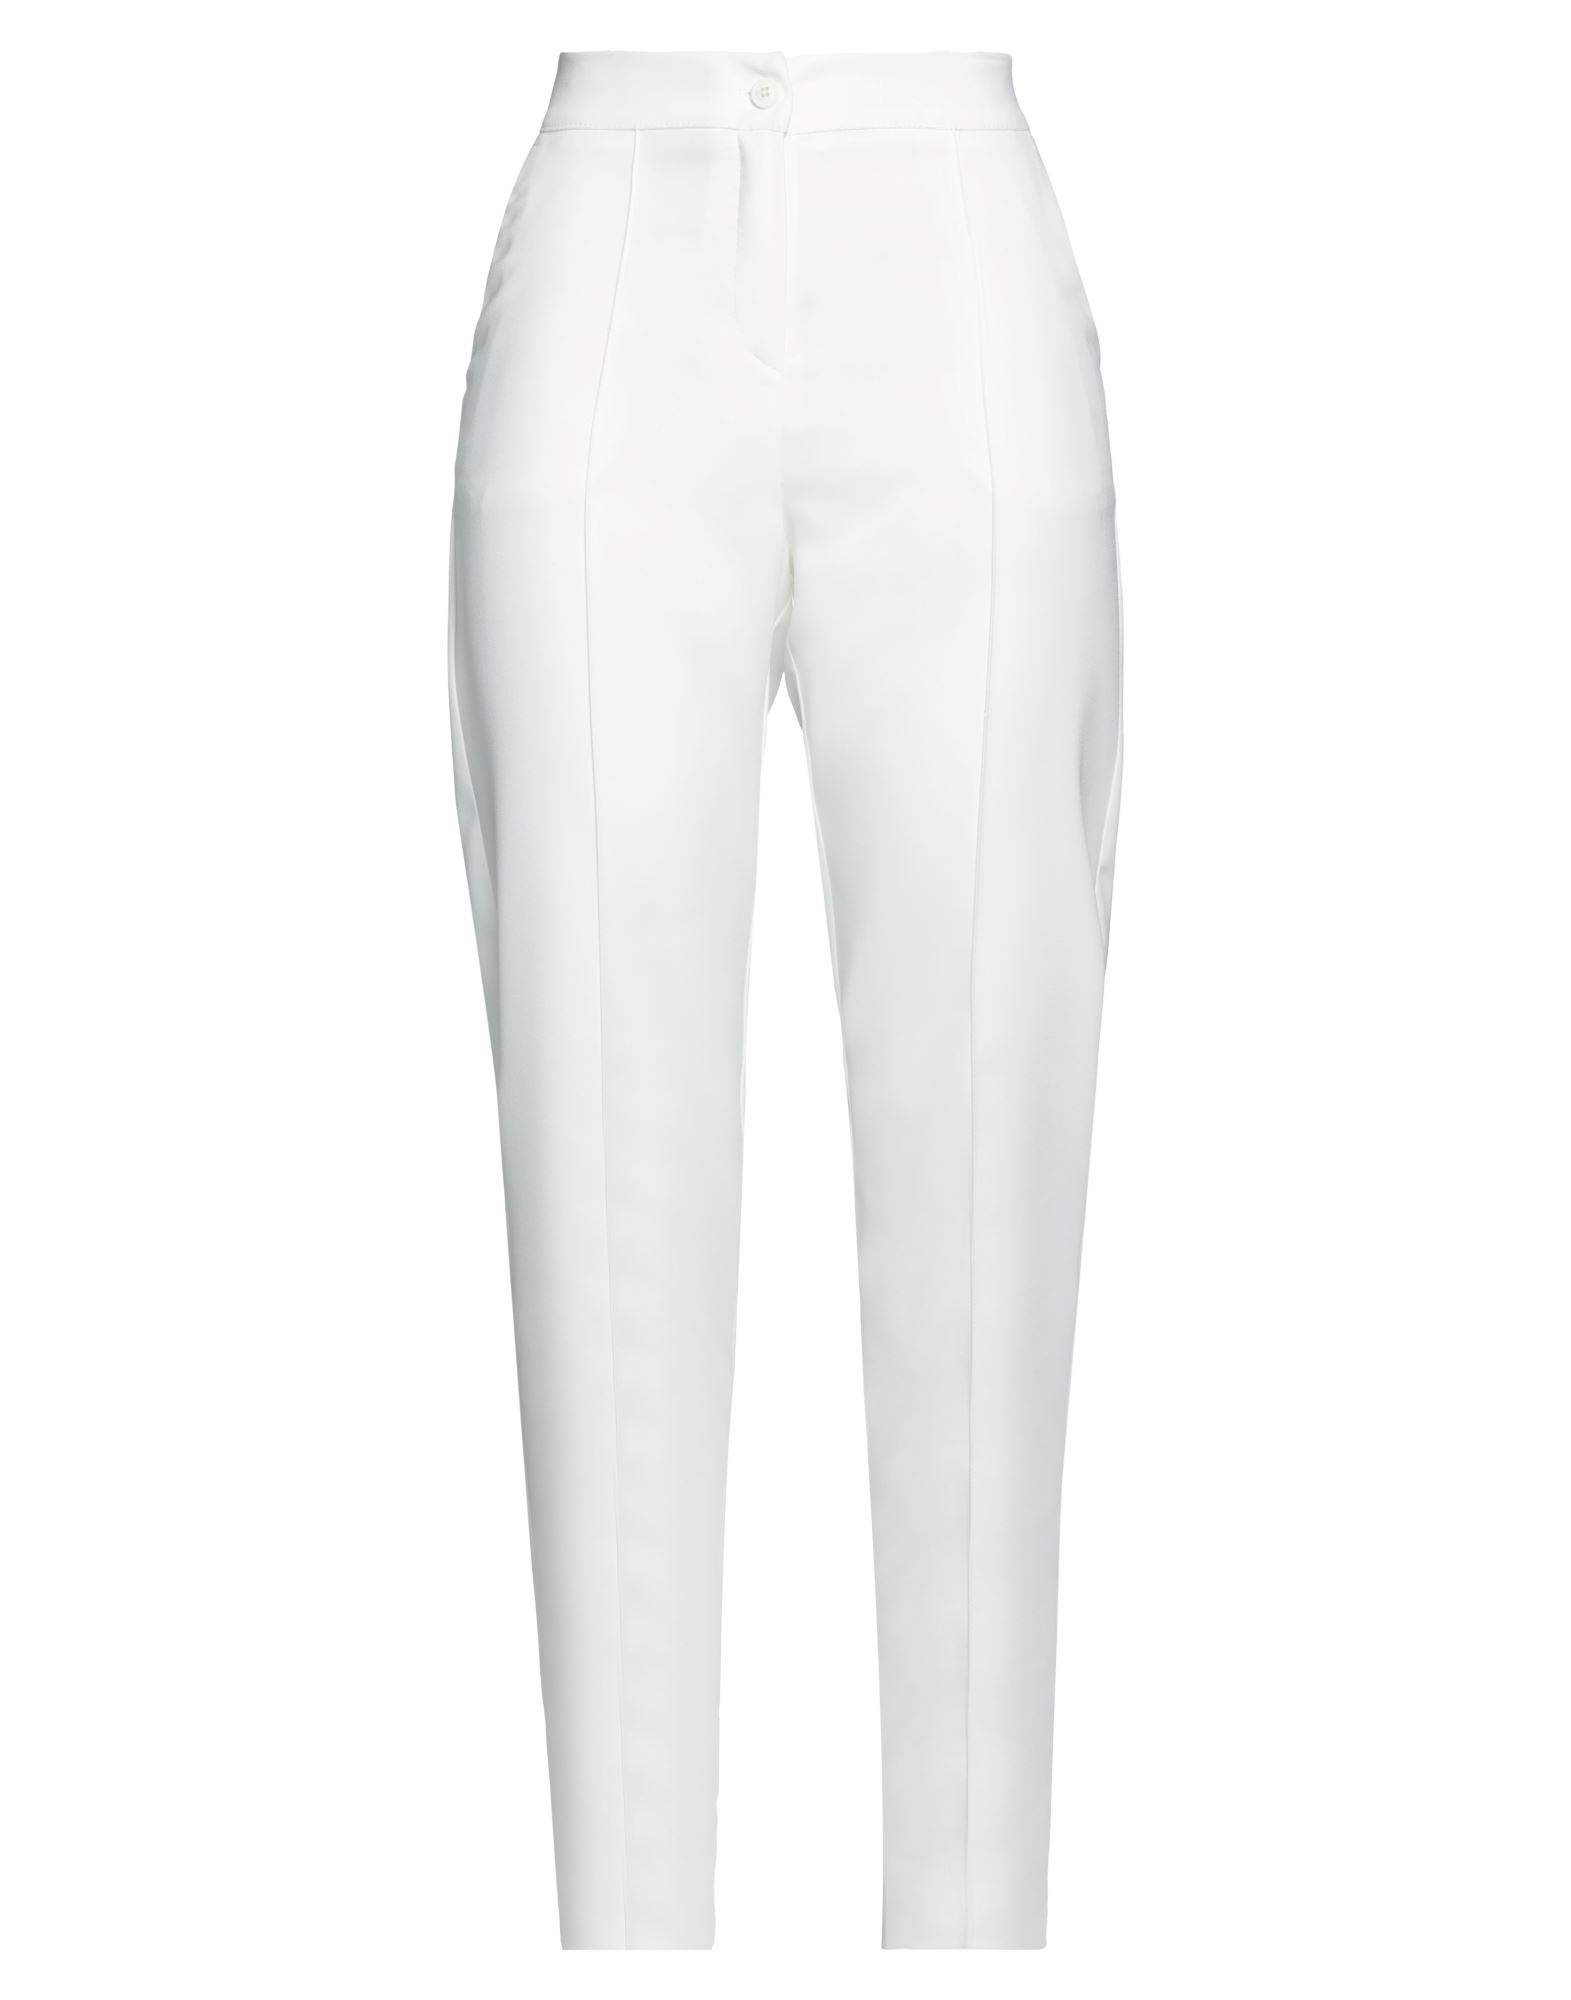 Armani Exchange Woman Pants White Size 6 Polyester